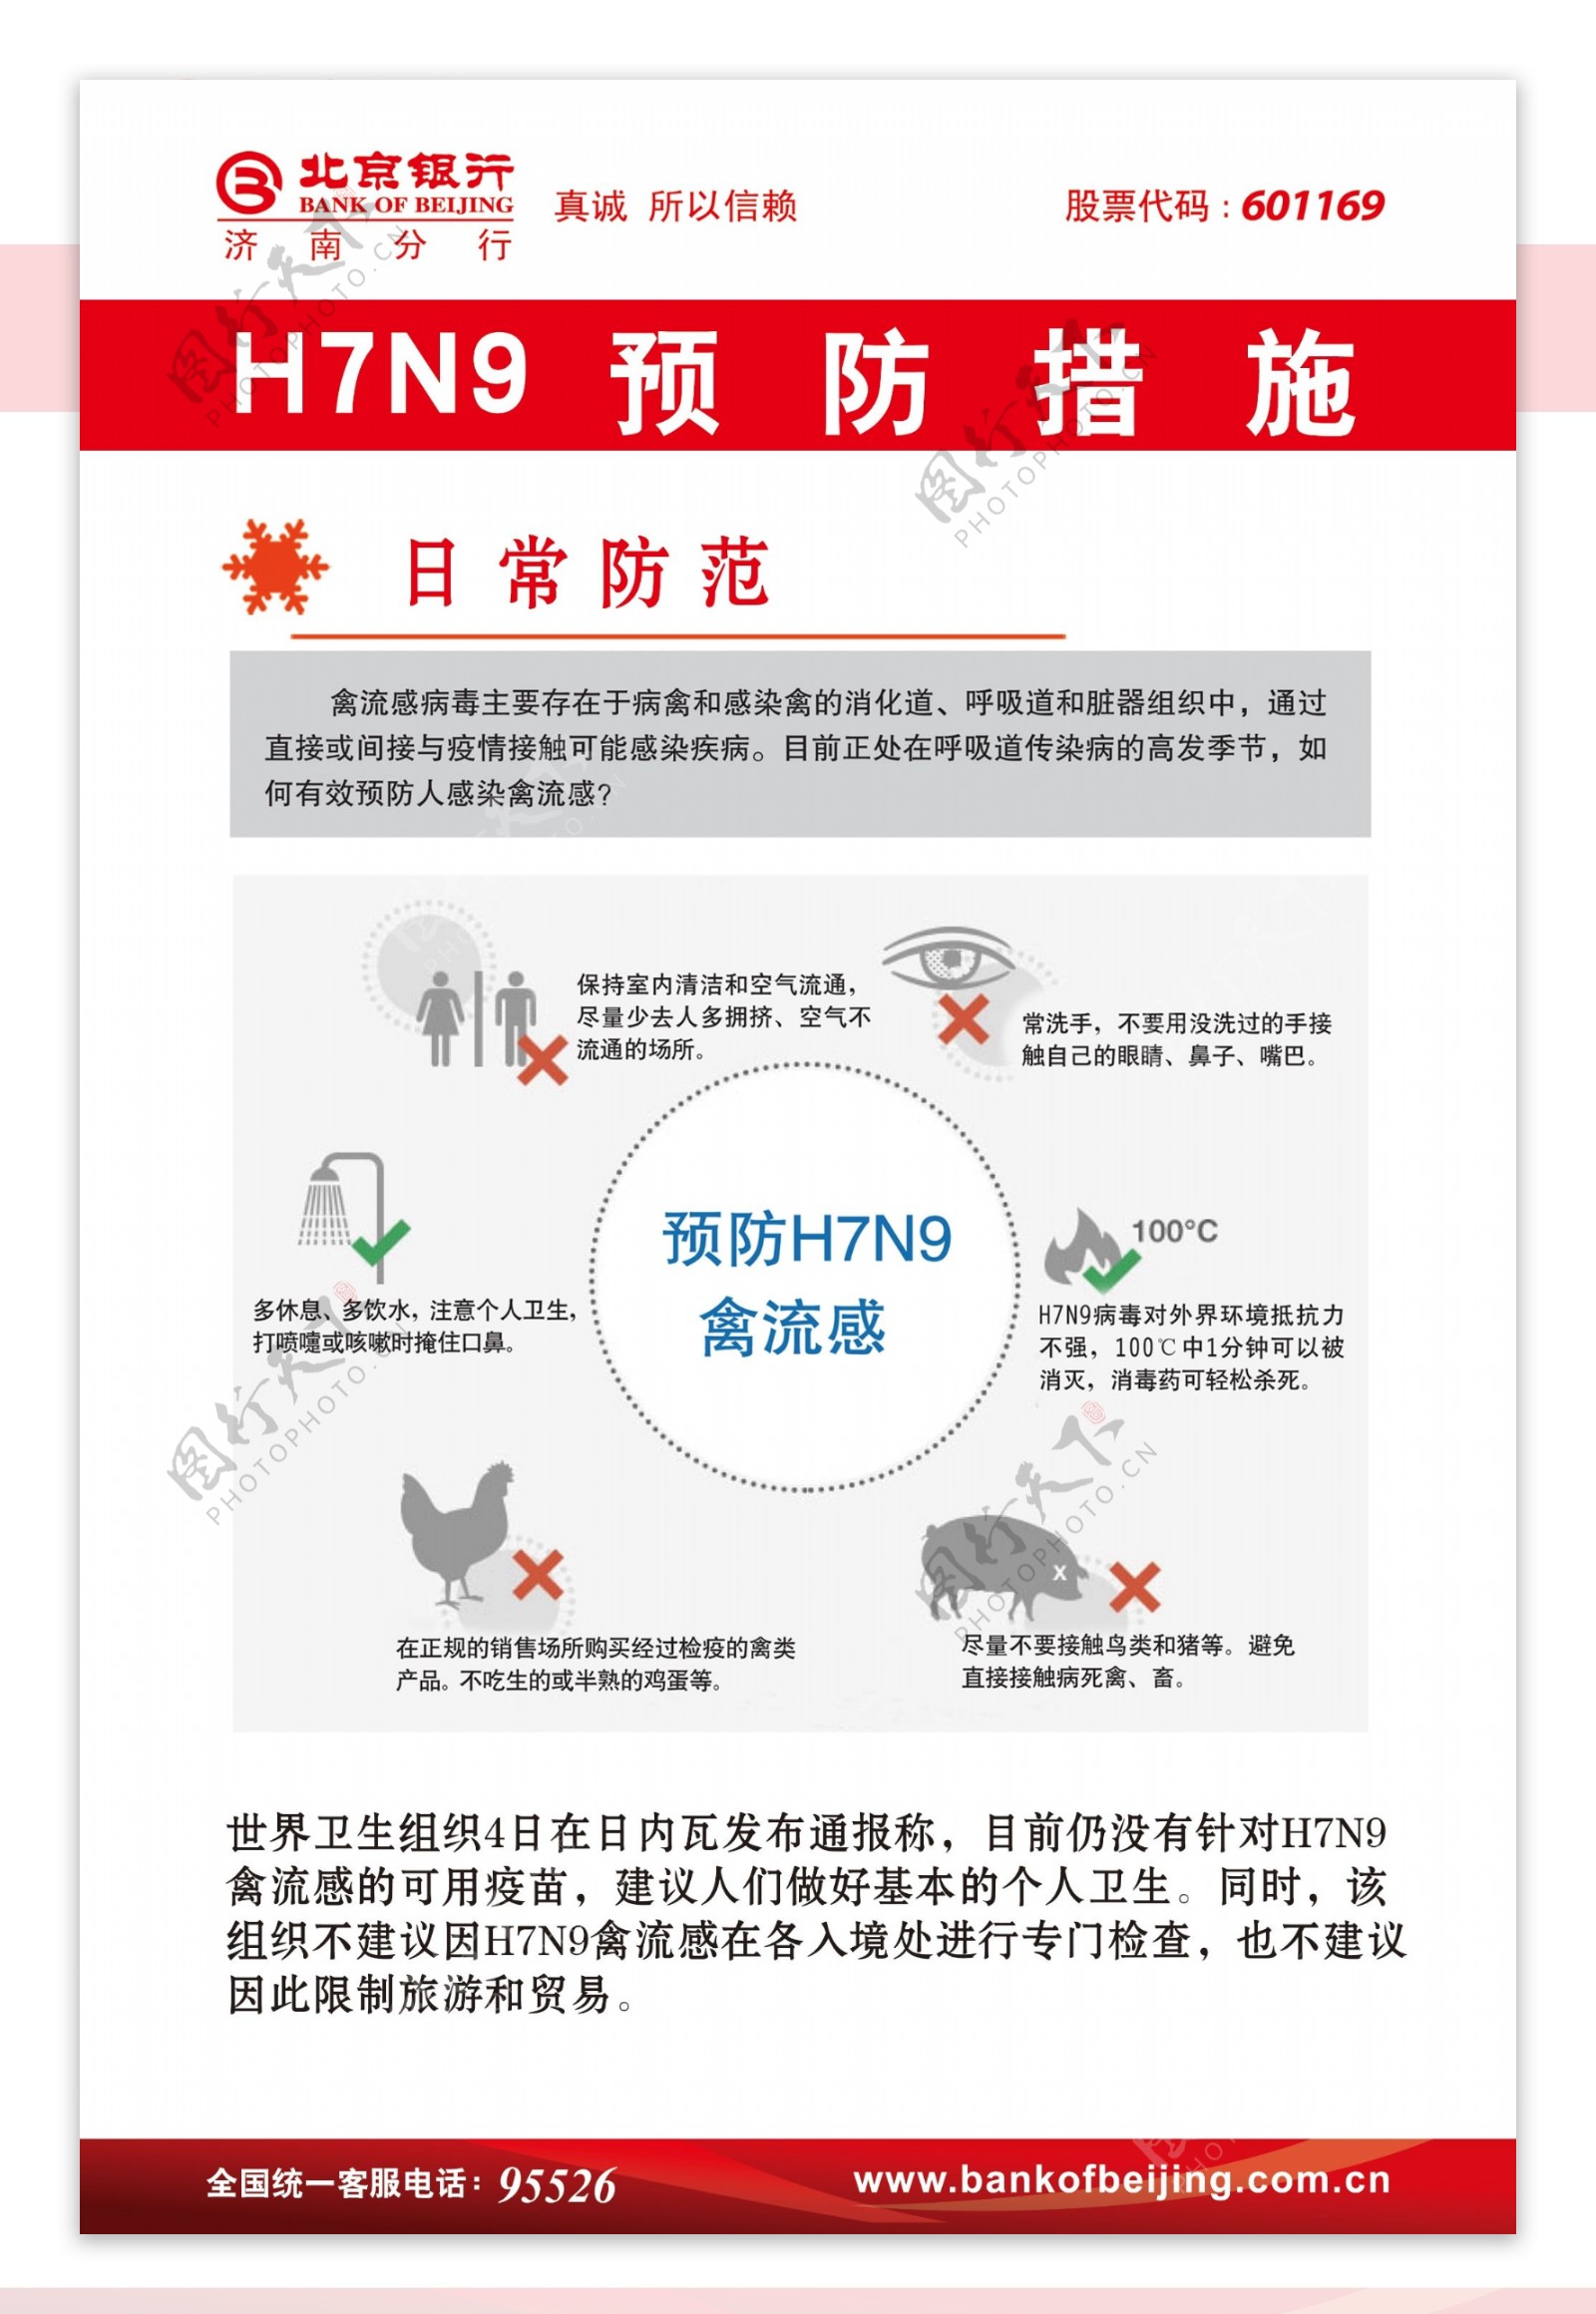 h7n9禽流感展板图片